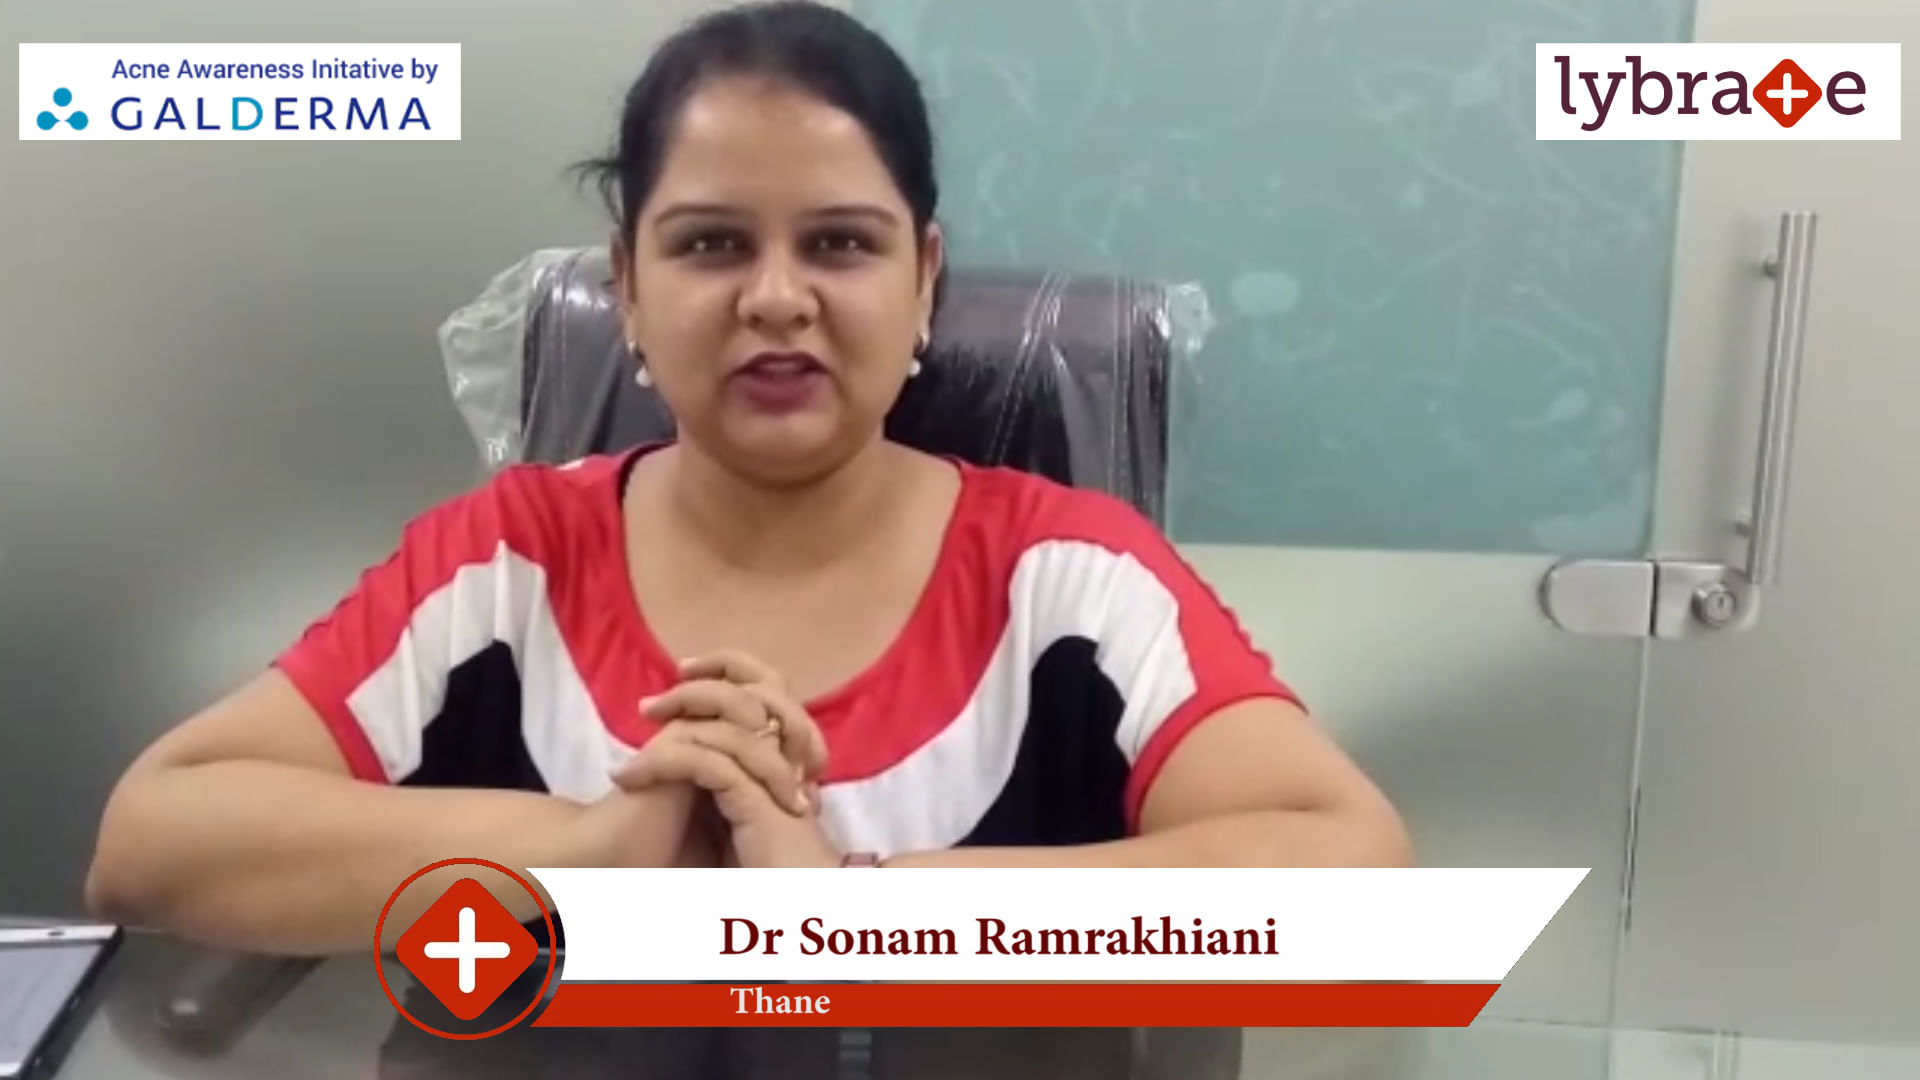 Lybrate | Dr. Sonam Ramrakhiani speaks on IMPORTANCE OF TREATING ACNE EARLY